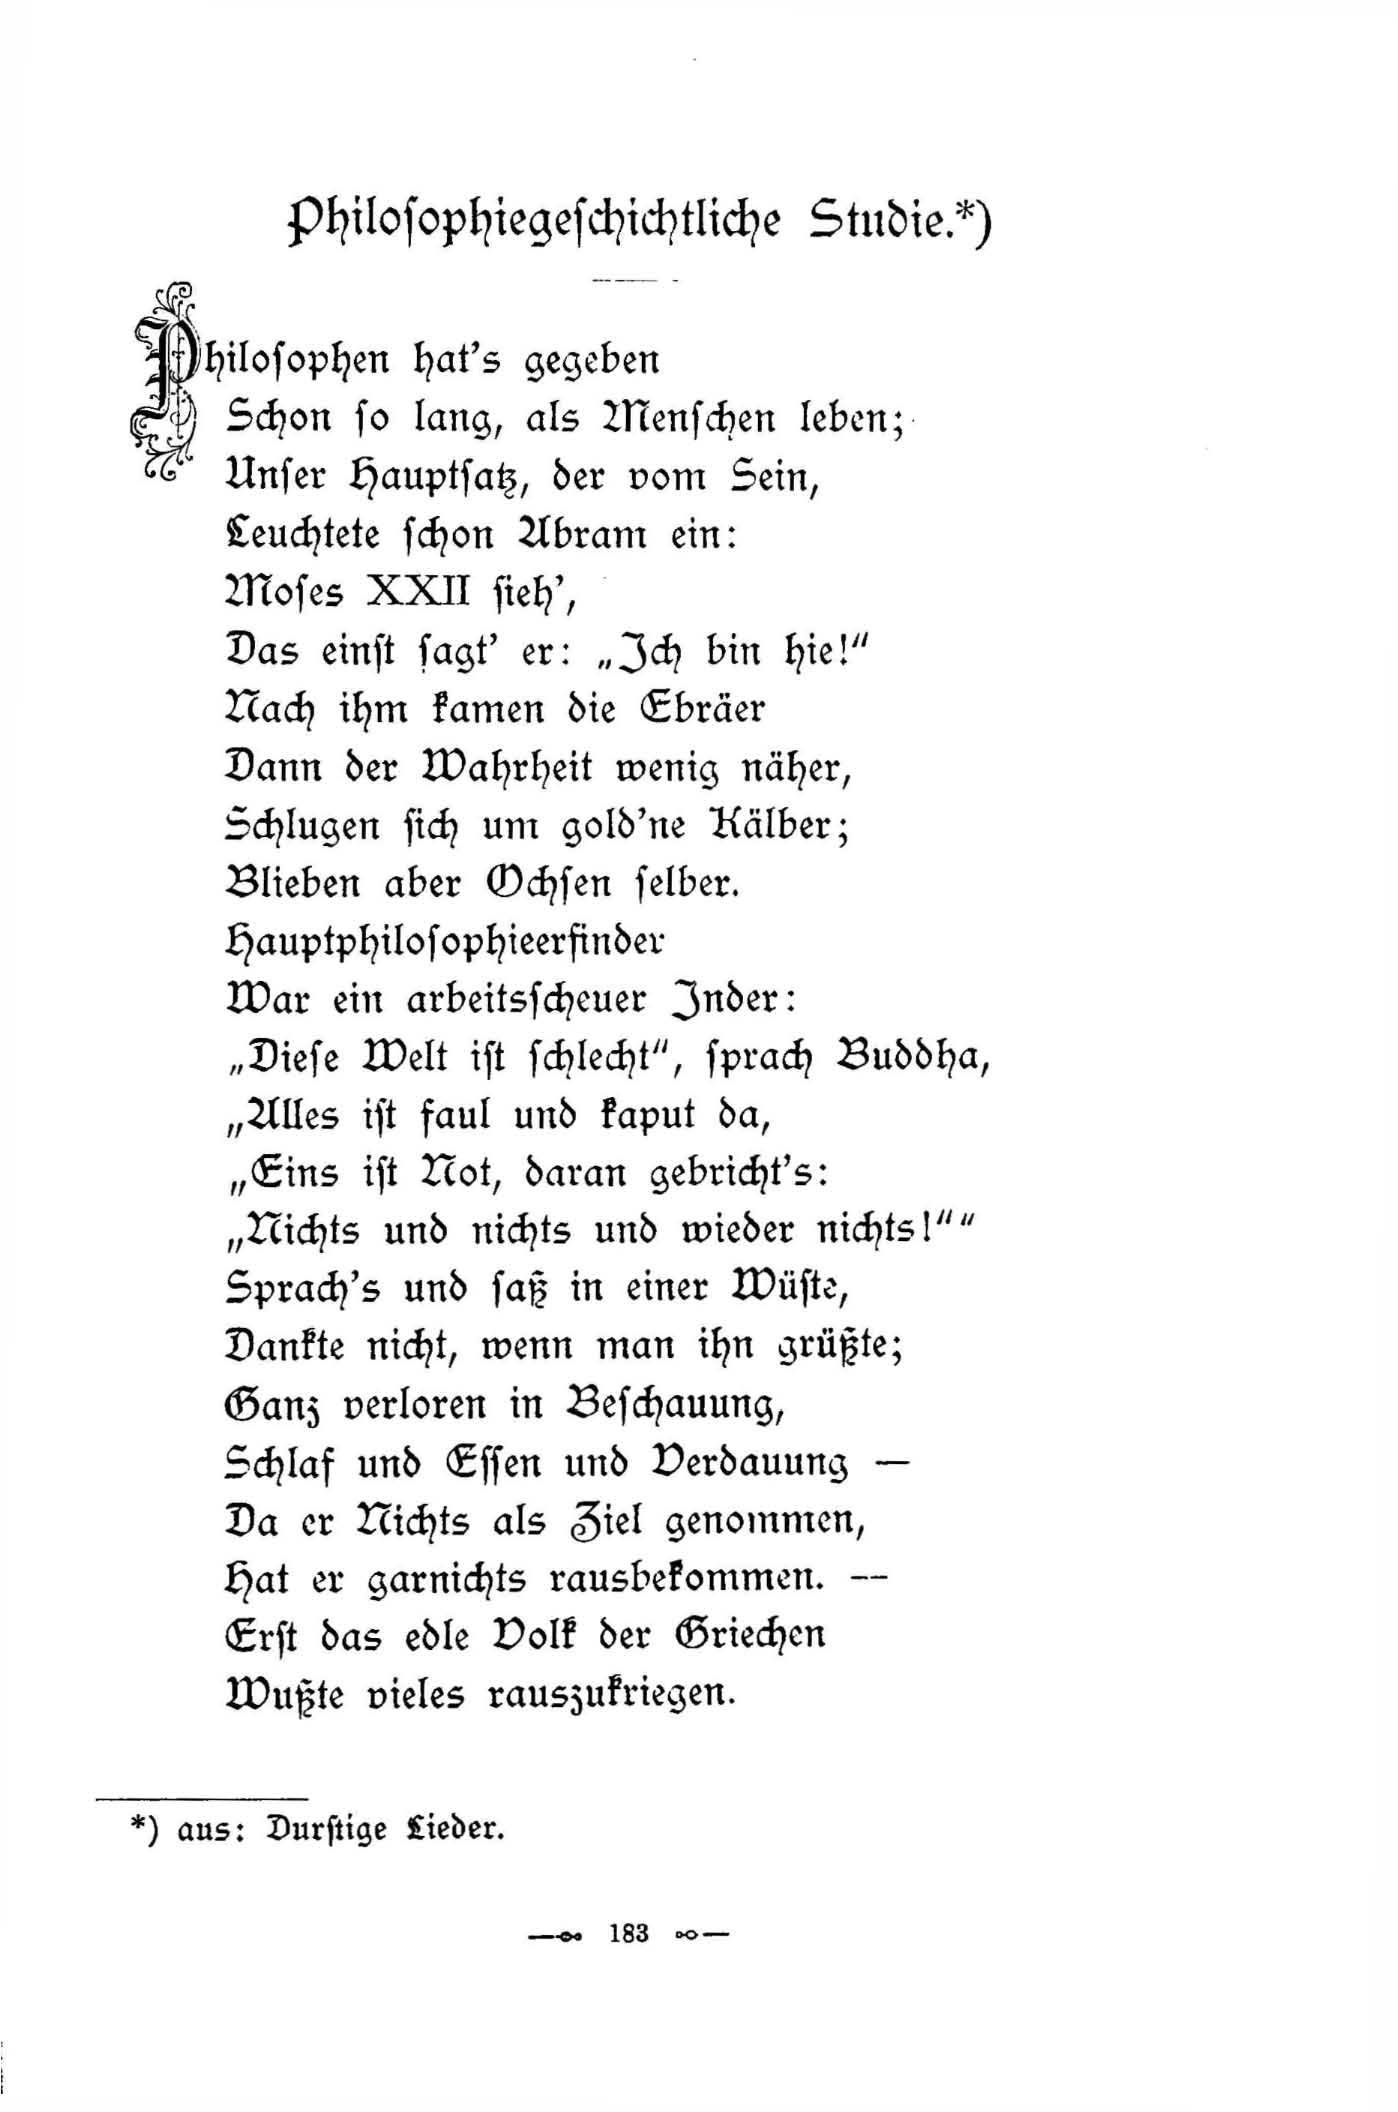 Philosophiegeschichtliche Studie (1896) | 1. (183) Haupttext